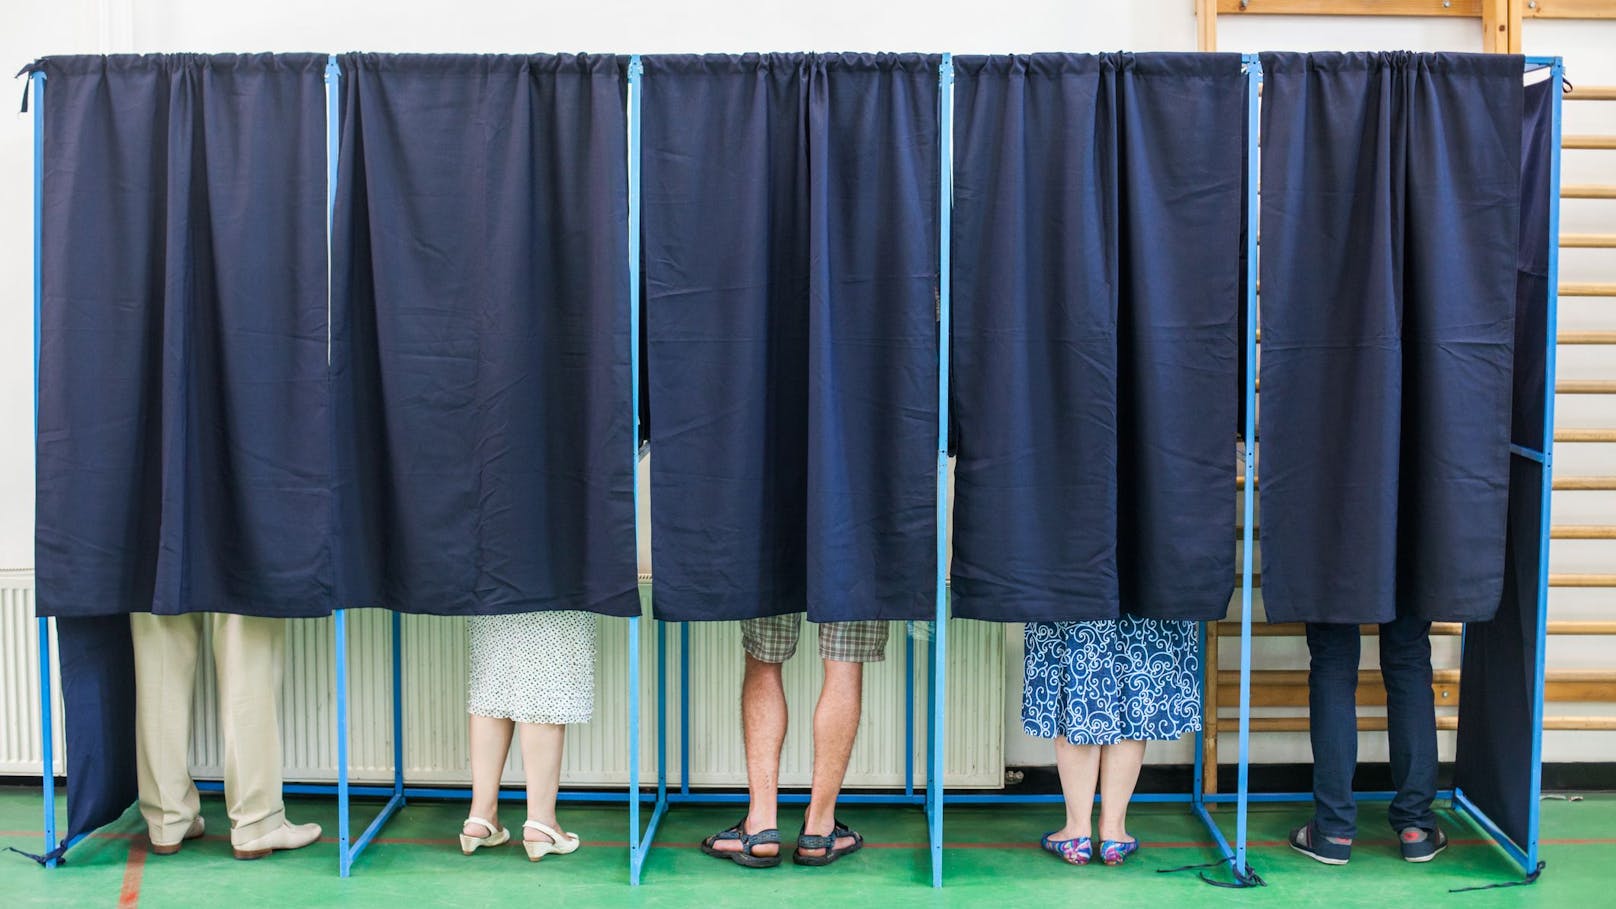 Menschen sahen, wie eine Wählerin am 13. August 2023 eine Wahlkabine in Argentinien betrat. Die Frau kam jedoch nicht wieder heraus (Symbolbild).